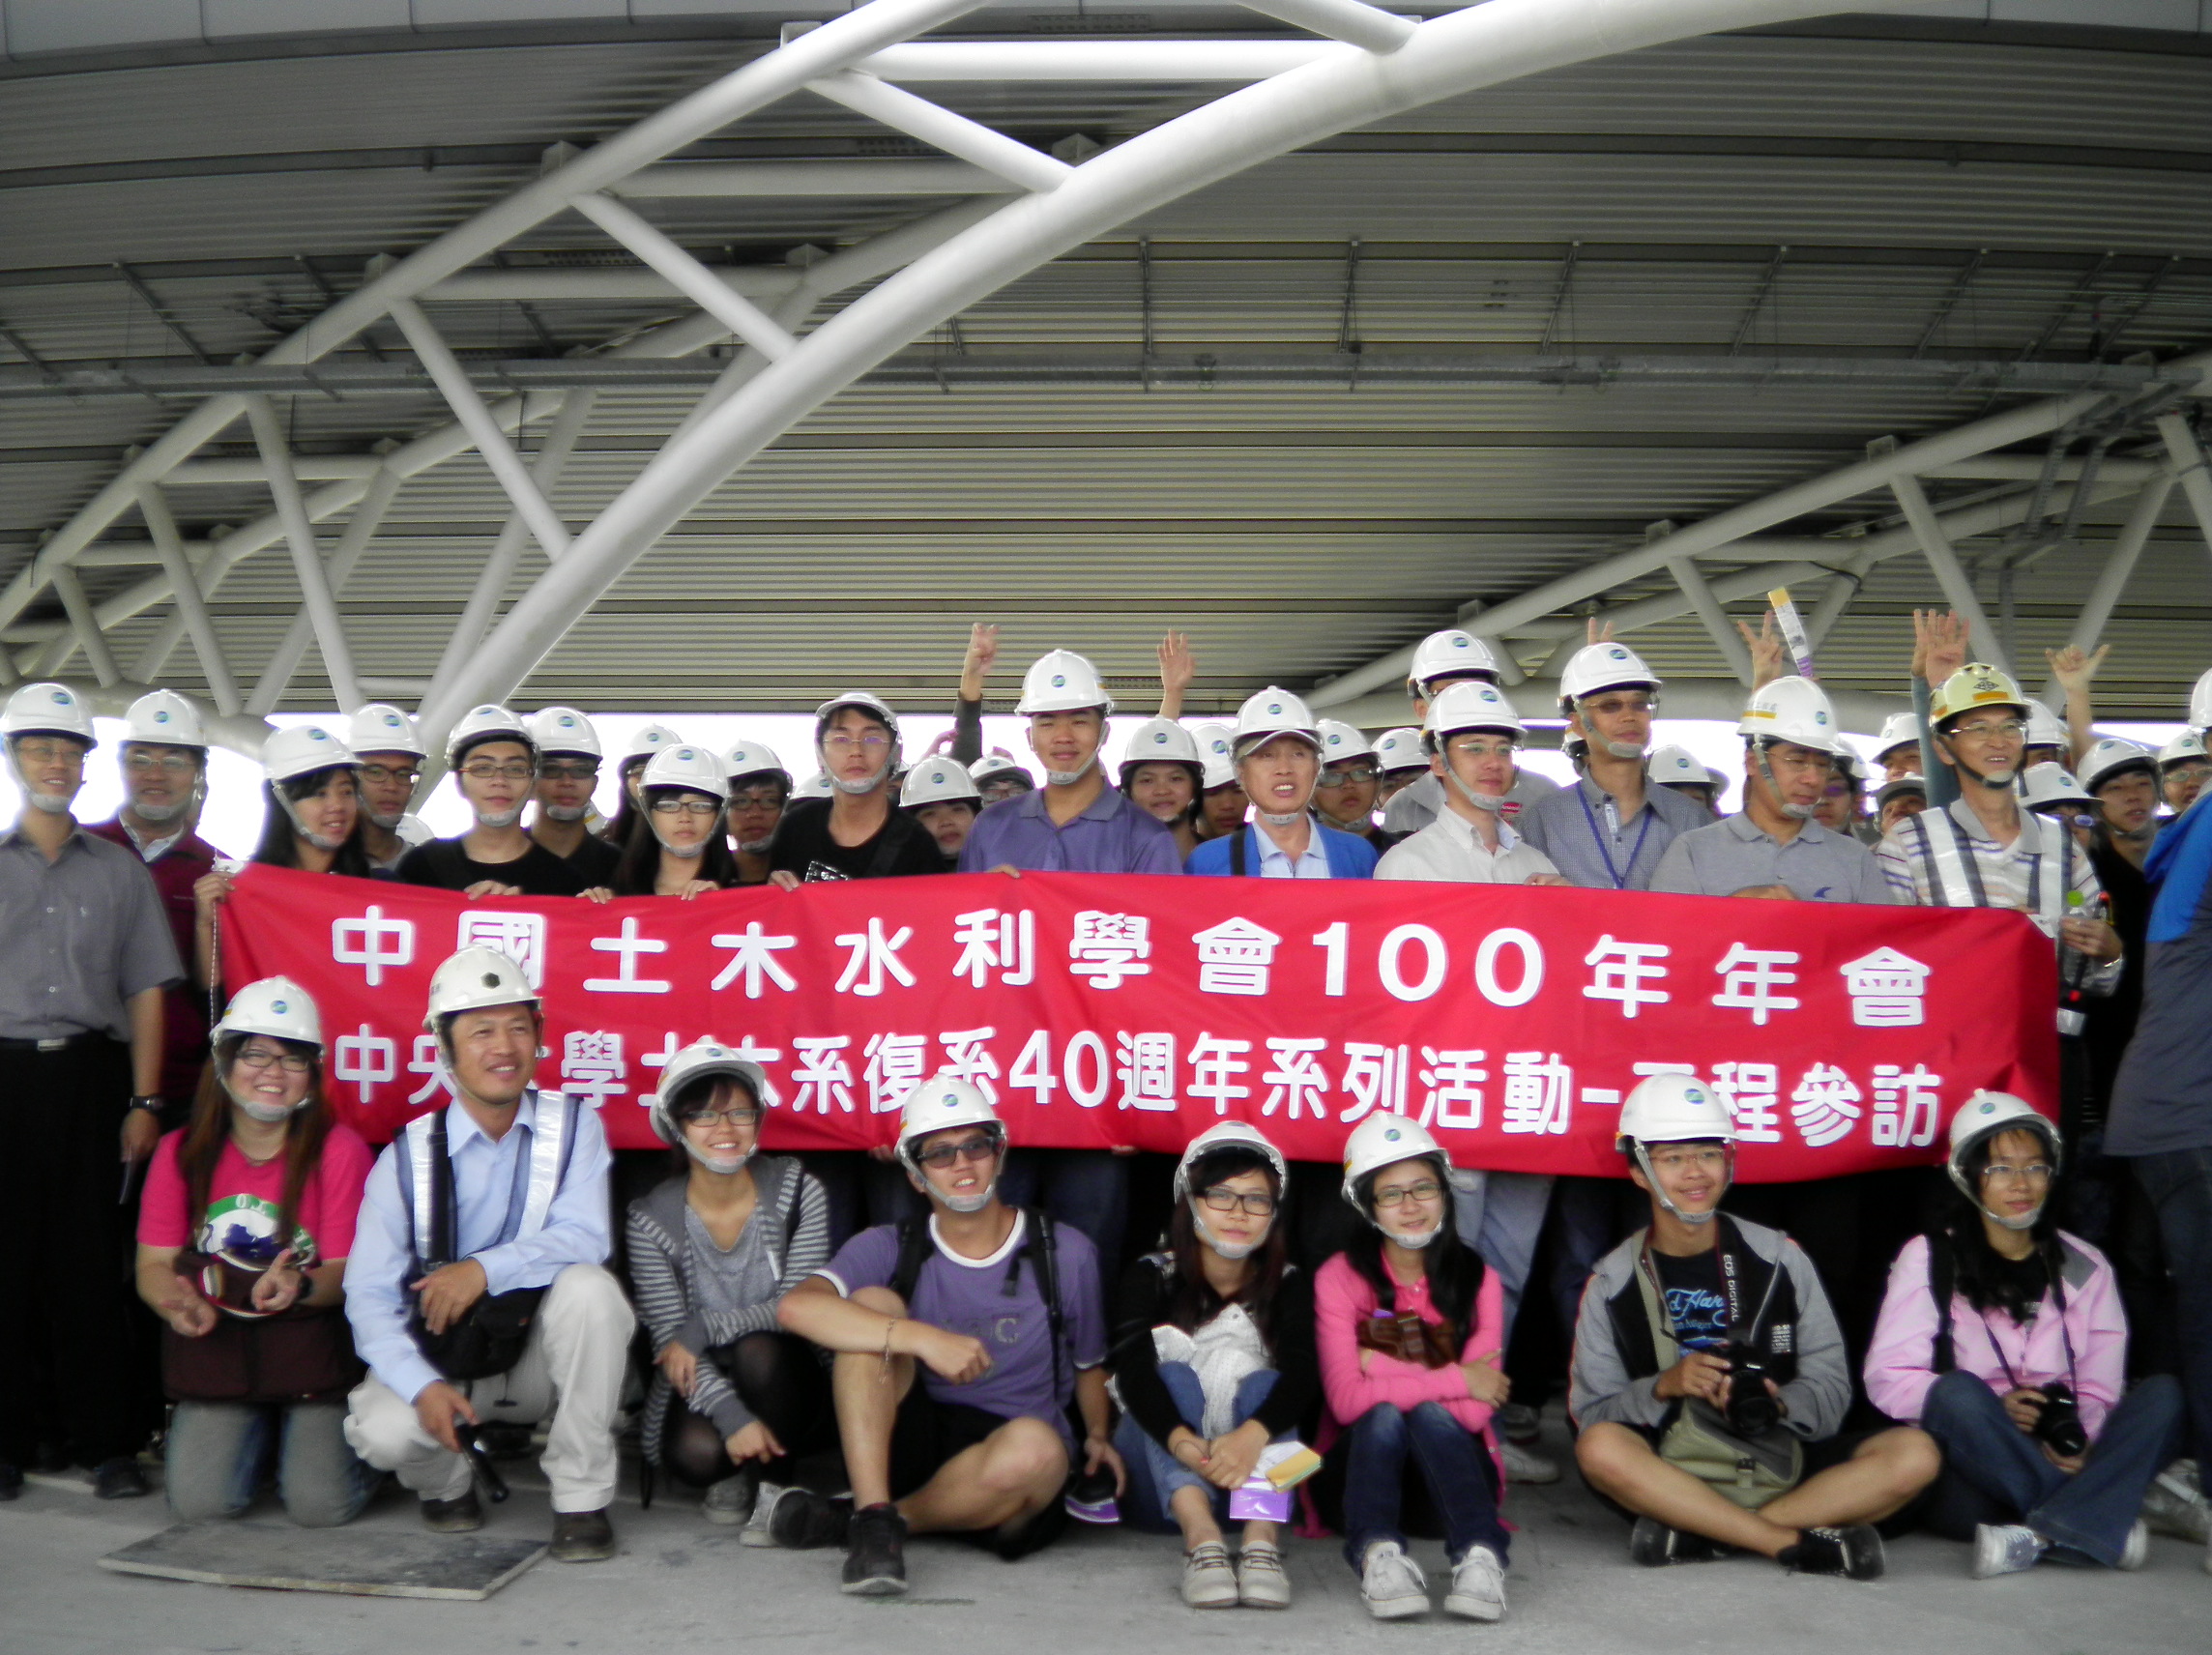 中國土木水利學會參觀機場捷運工程。照片中央大學土木系提供